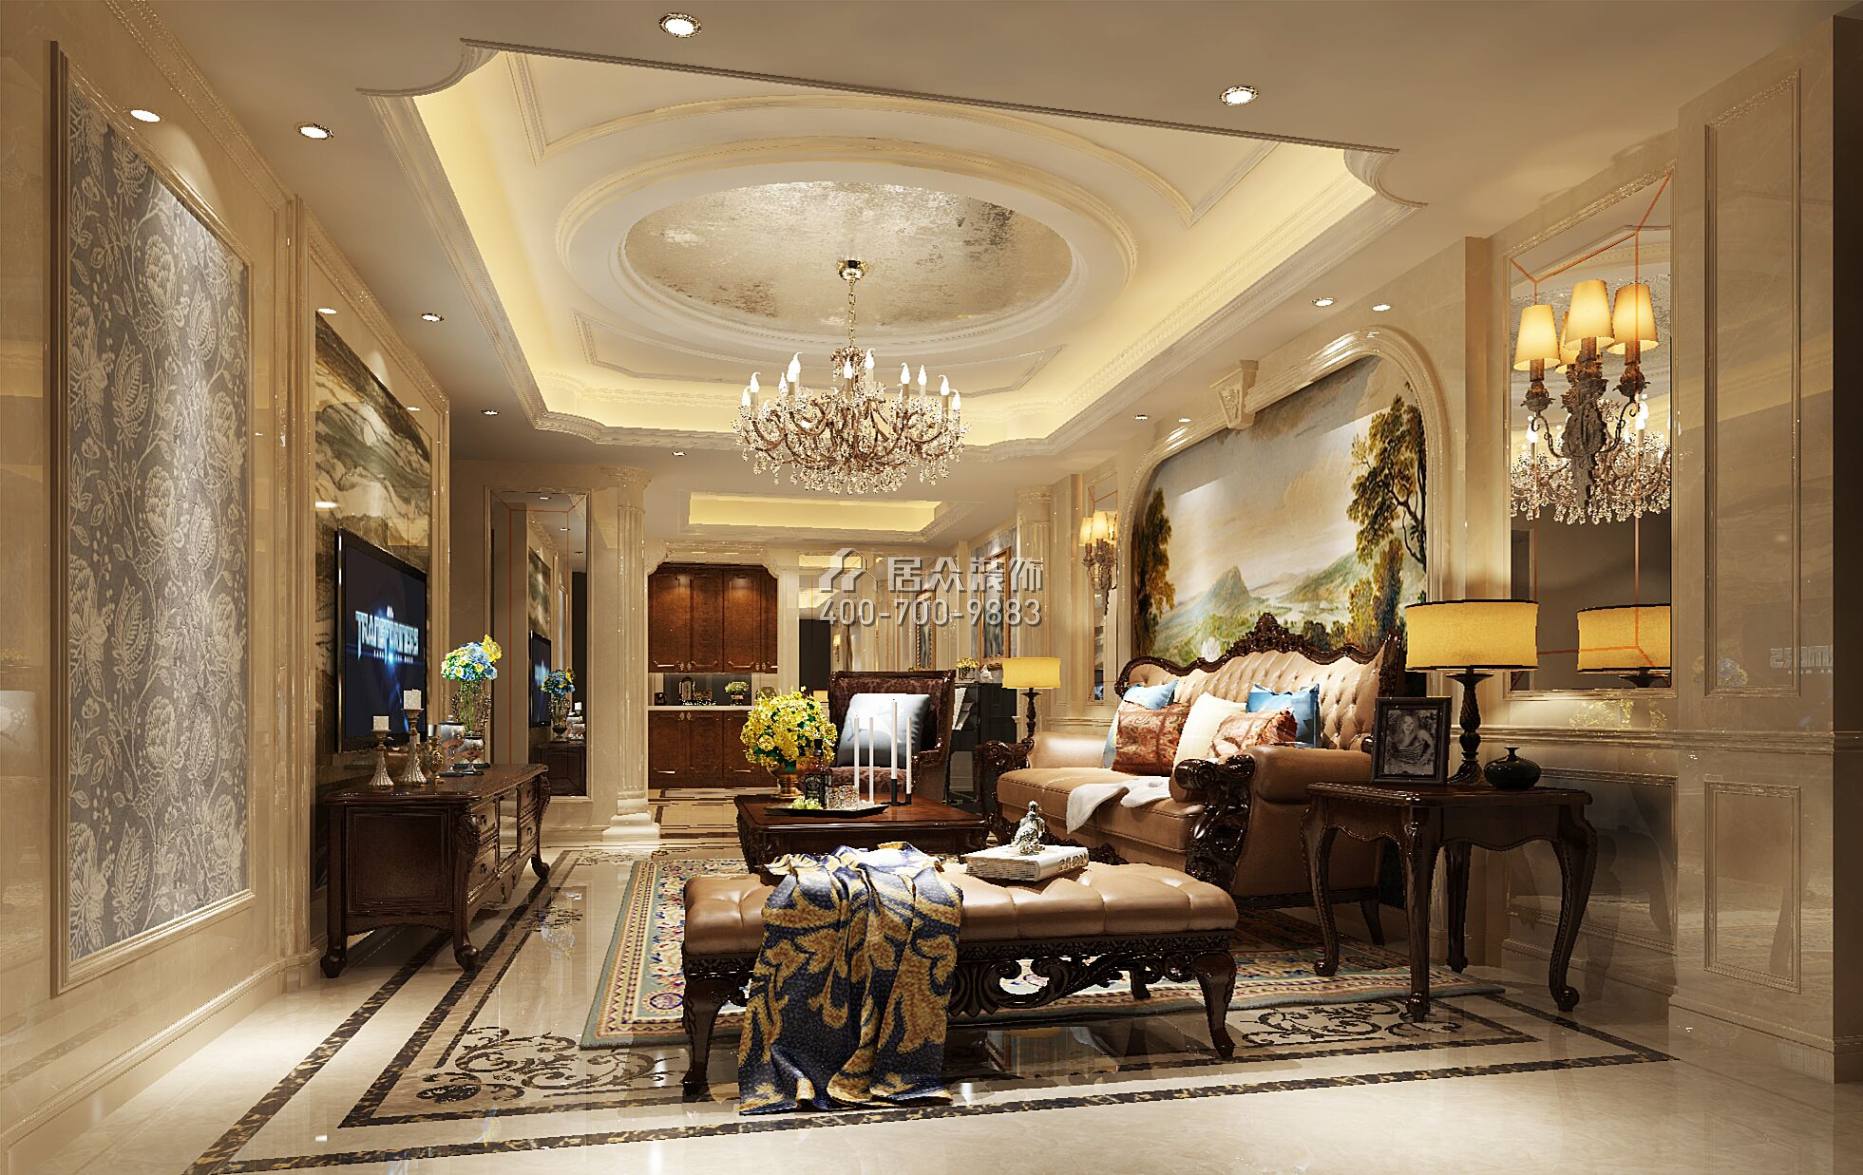 全盛紫悅龍庭165平方米美式風格復式戶型客廳裝修效果圖